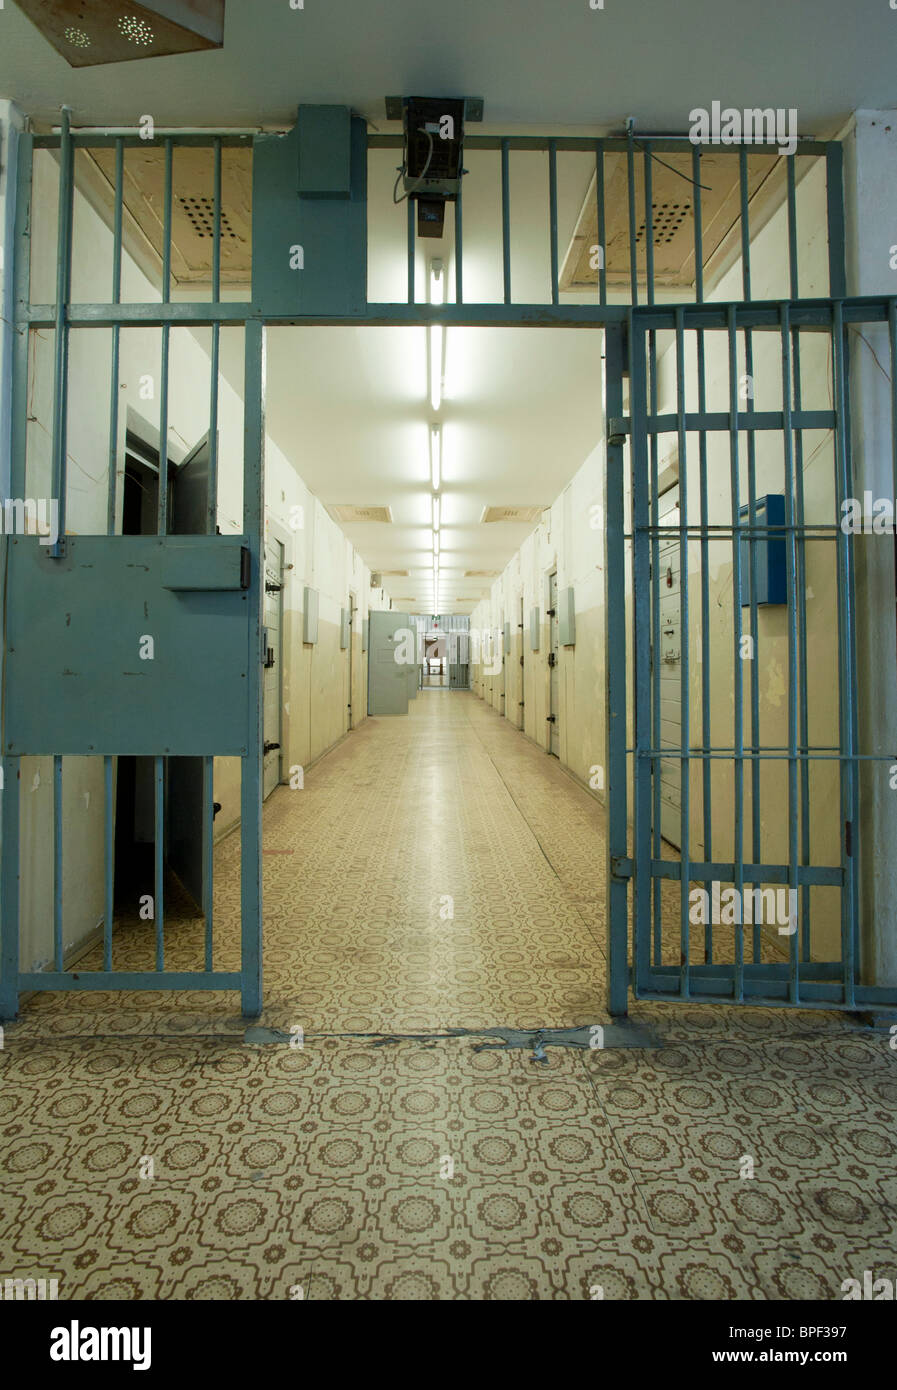 Couloir sécurisé avec des cellules au secret d'état est-allemand de la police ou de la sécurité à la prison de la STASI à Berlin Hohenschönhausen Allemagne Banque D'Images